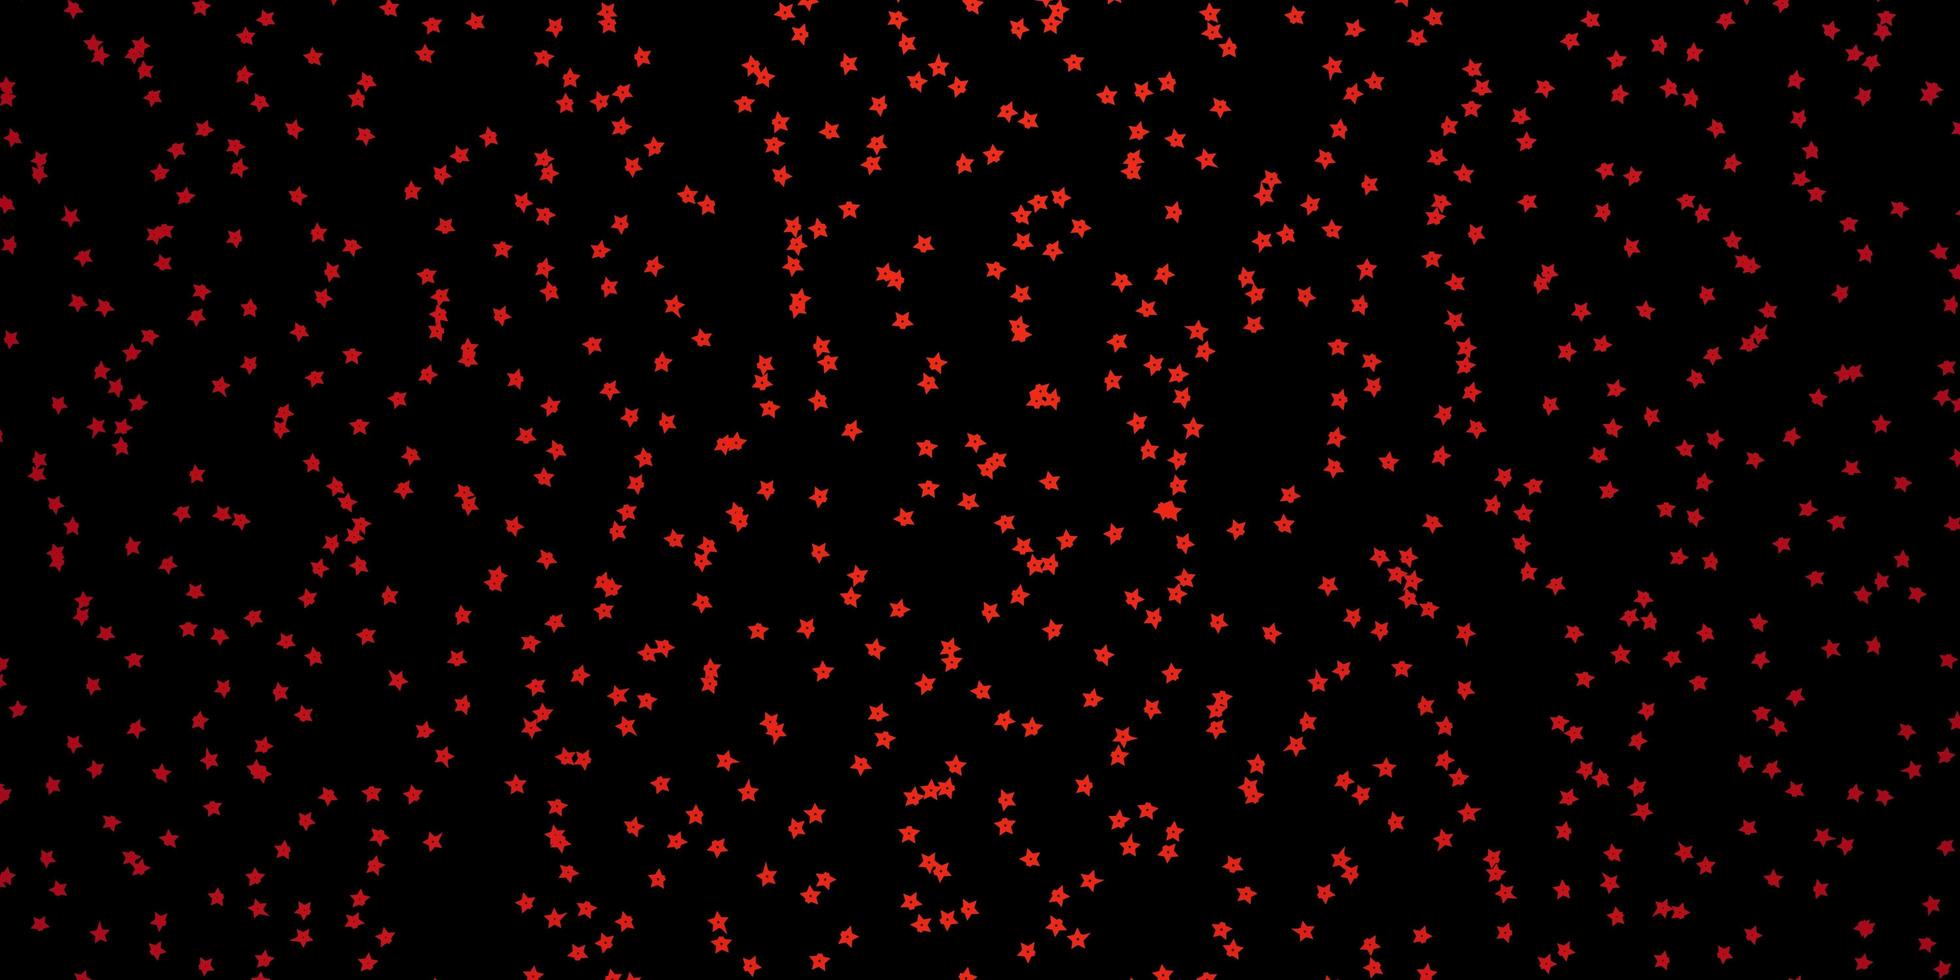 plantilla de vector rojo oscuro con estrellas de neón.